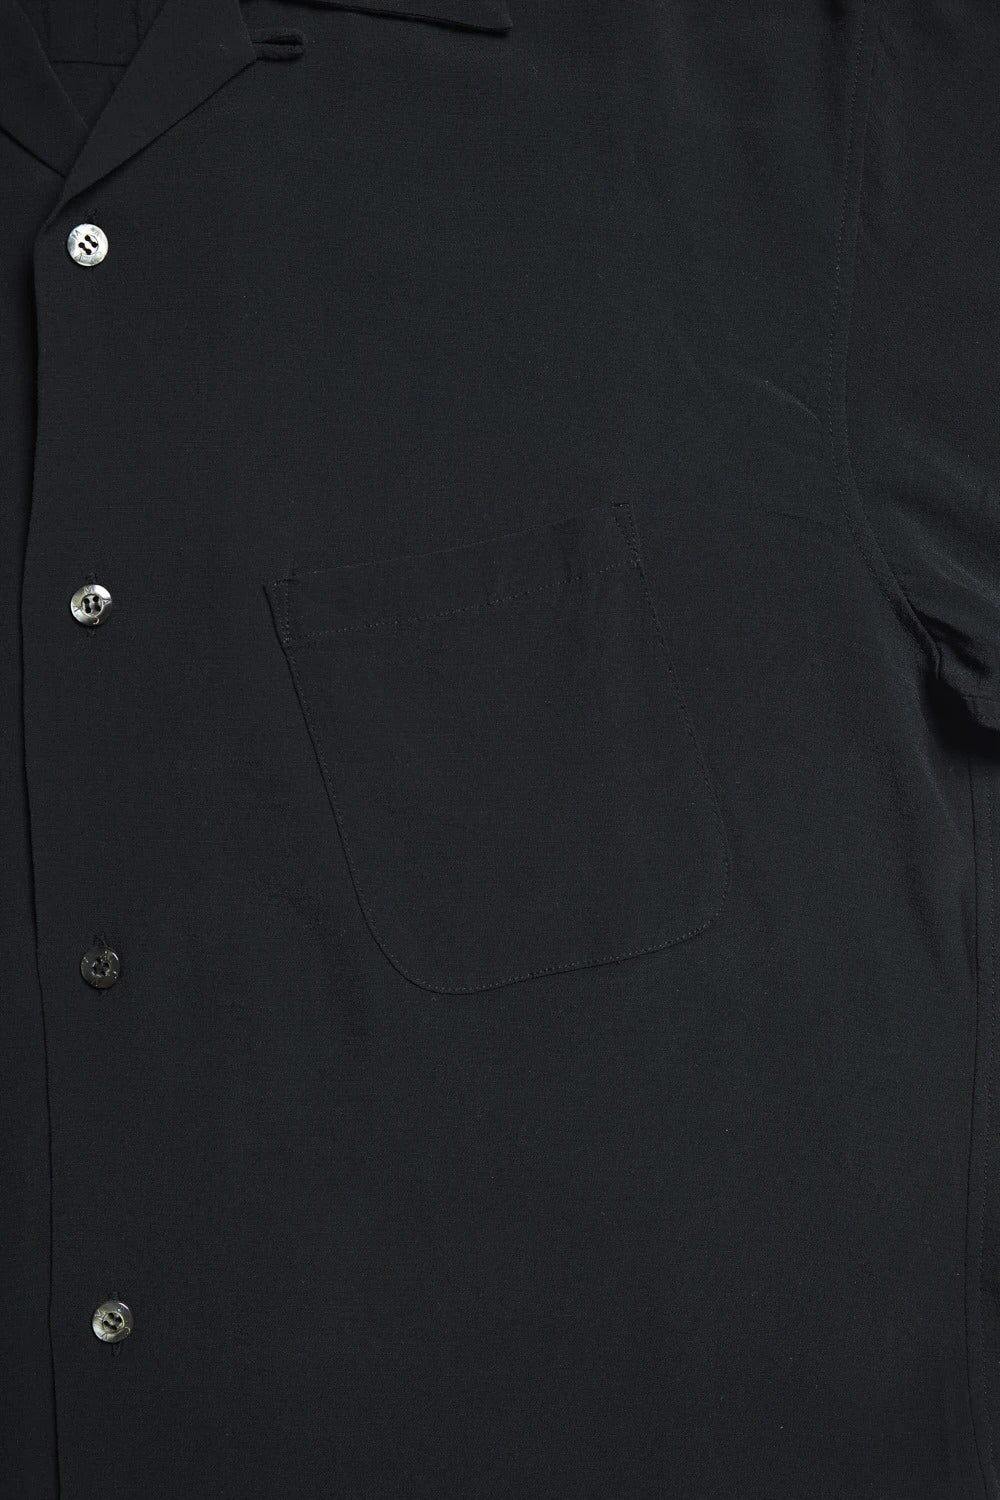 ADDICT Clothes - Open Collar Slant Pocket Shirt - Black